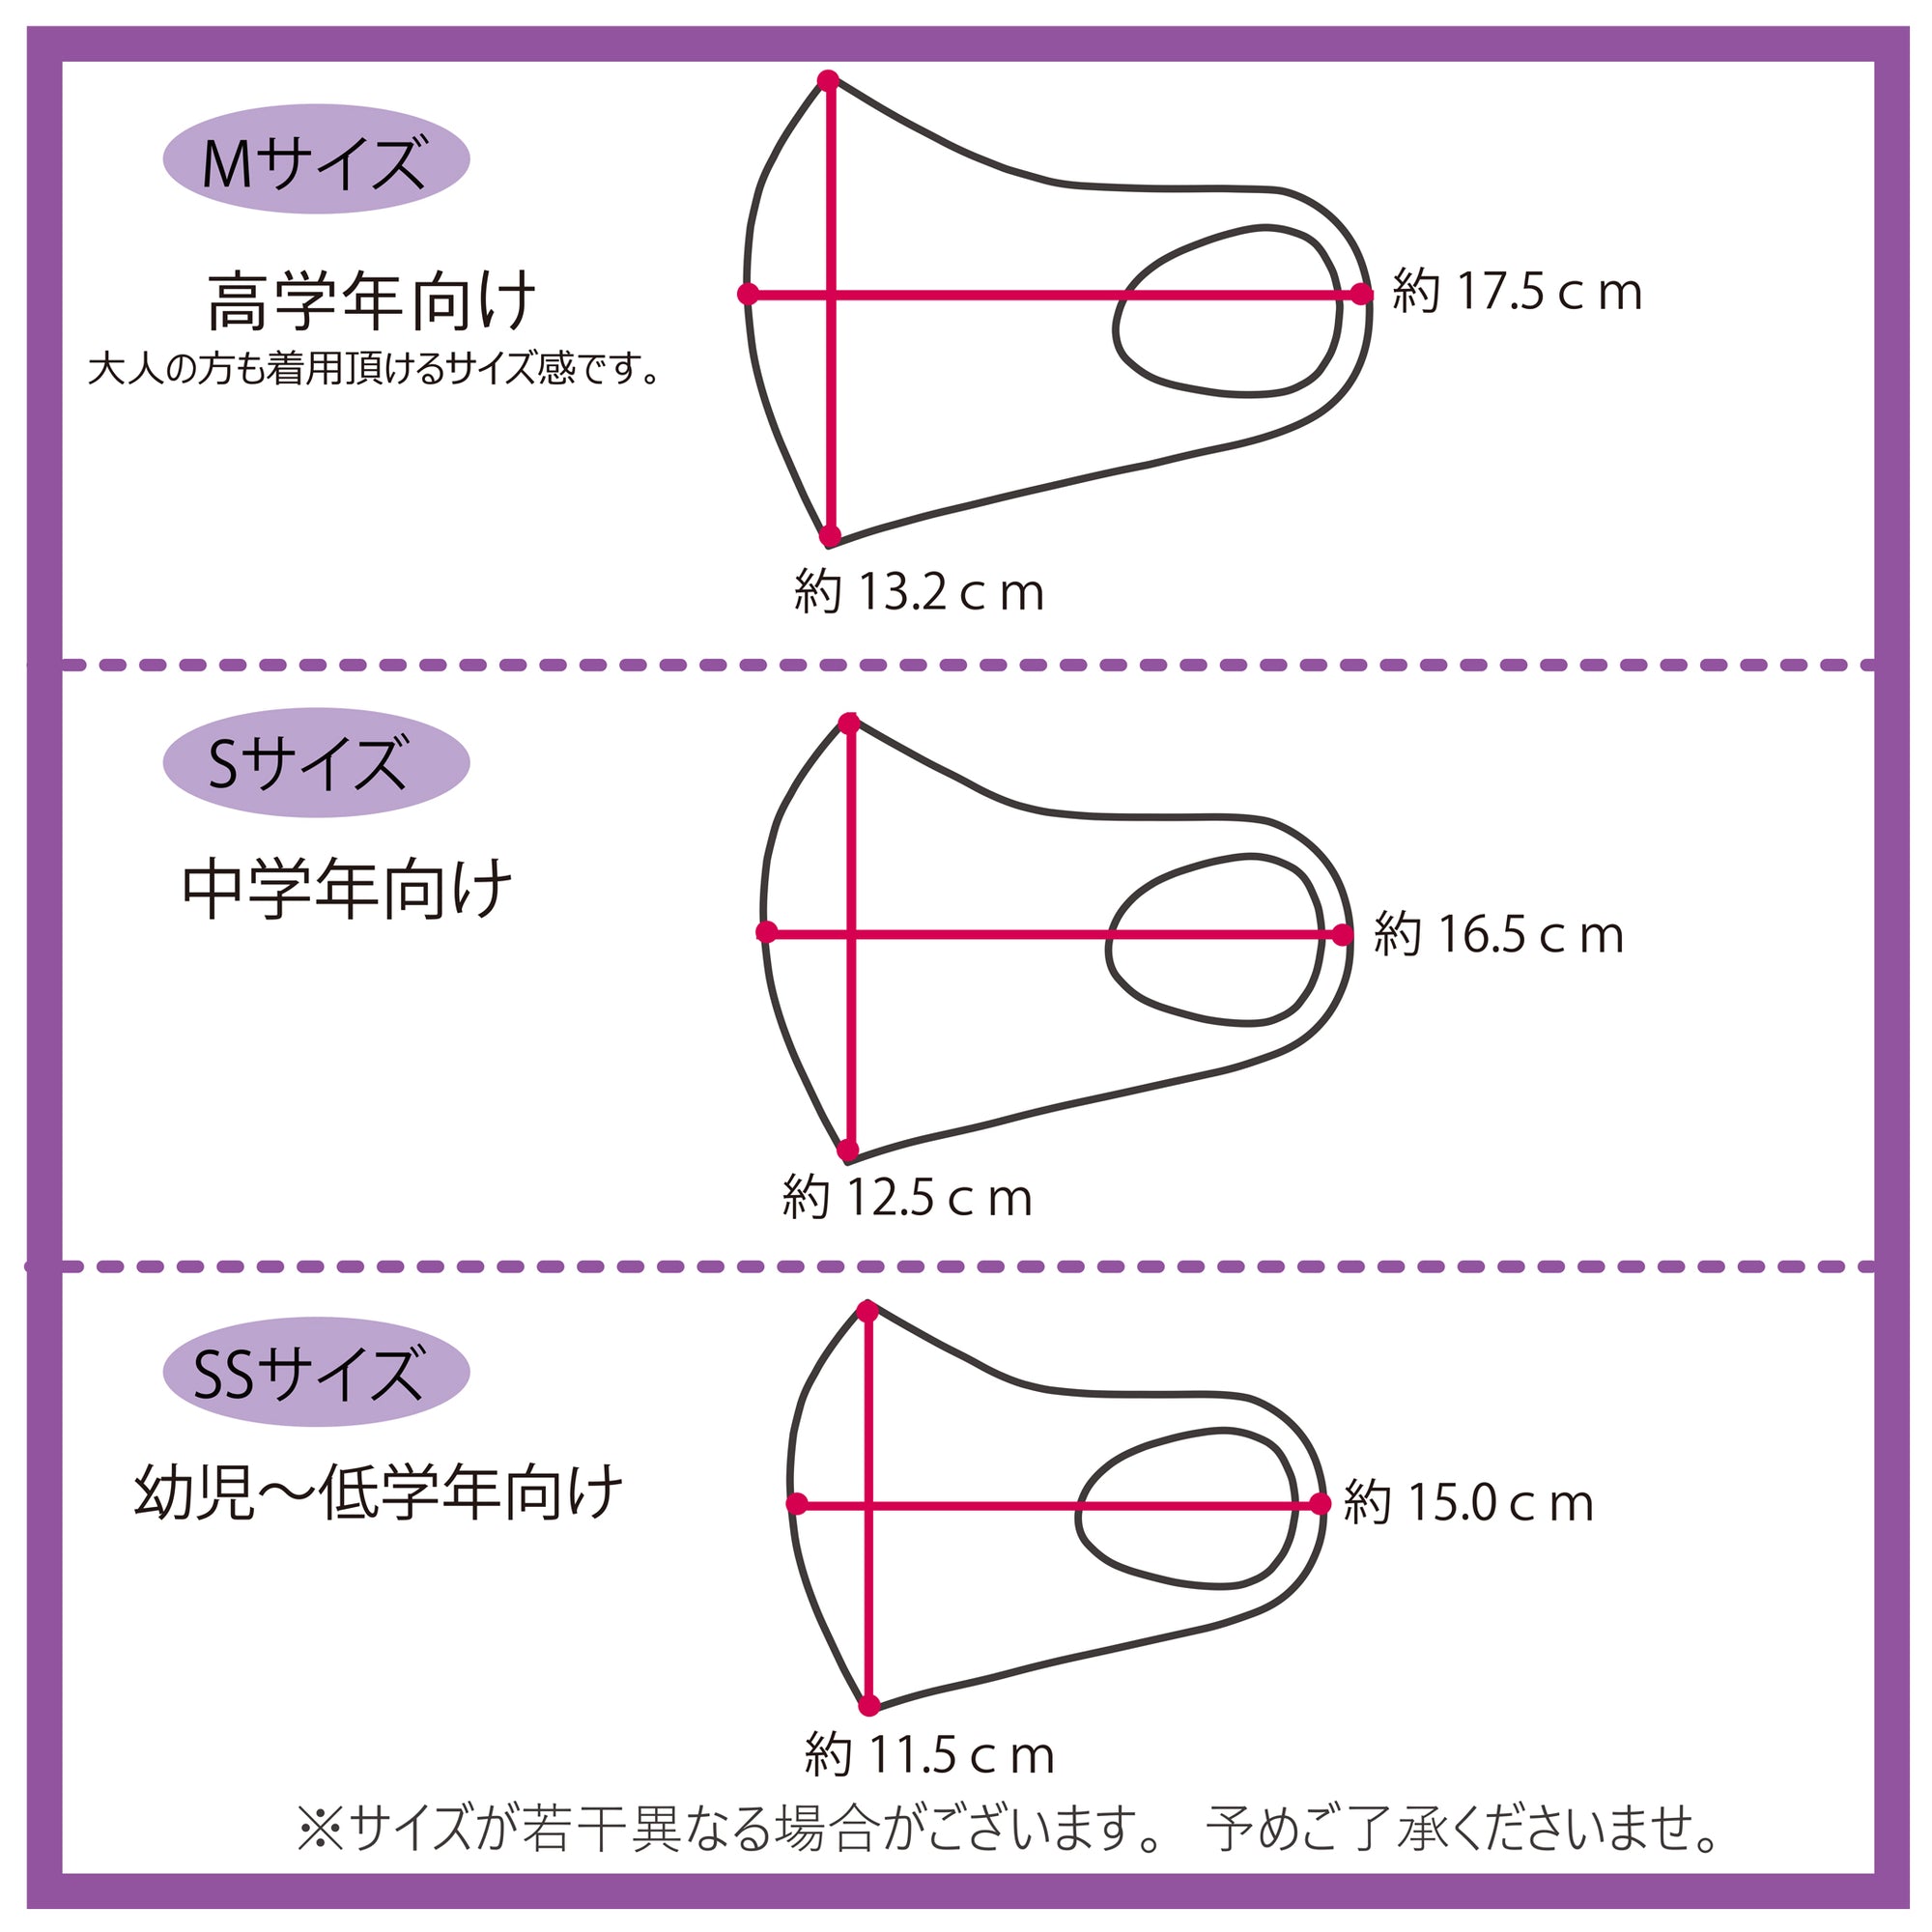 (40%オフ! セール商品)ミネラル マスク Candychuu ロゴ (200593)